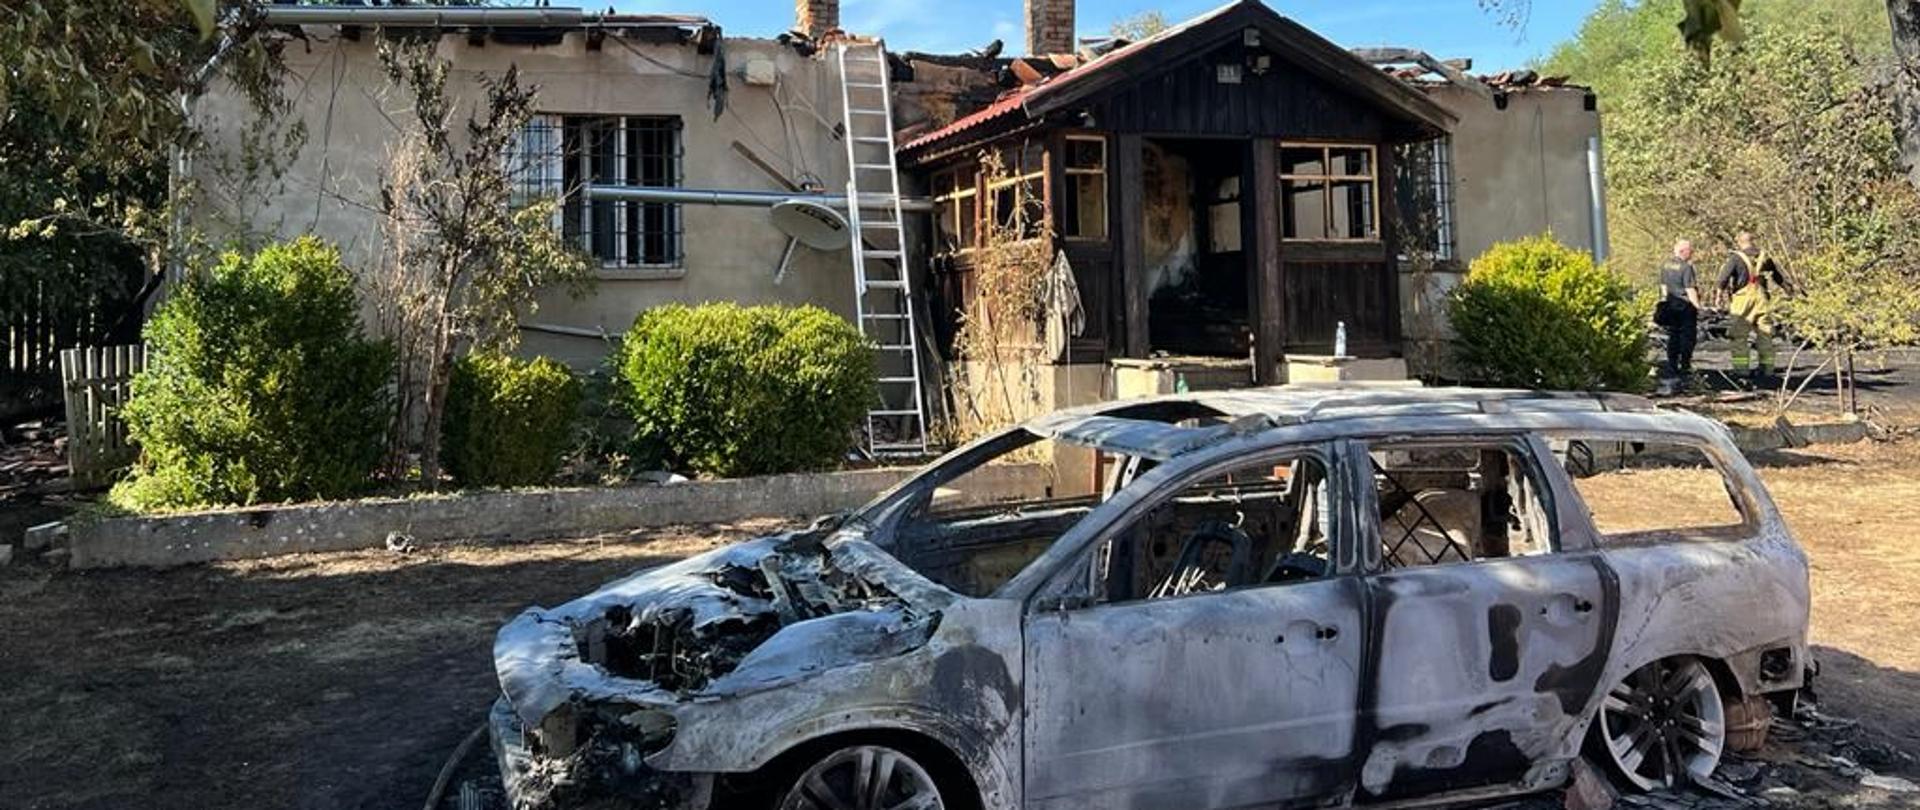 Na pierwszym planie spalony samochód osobowy, w tle budynek mieszkalny po pożarze.